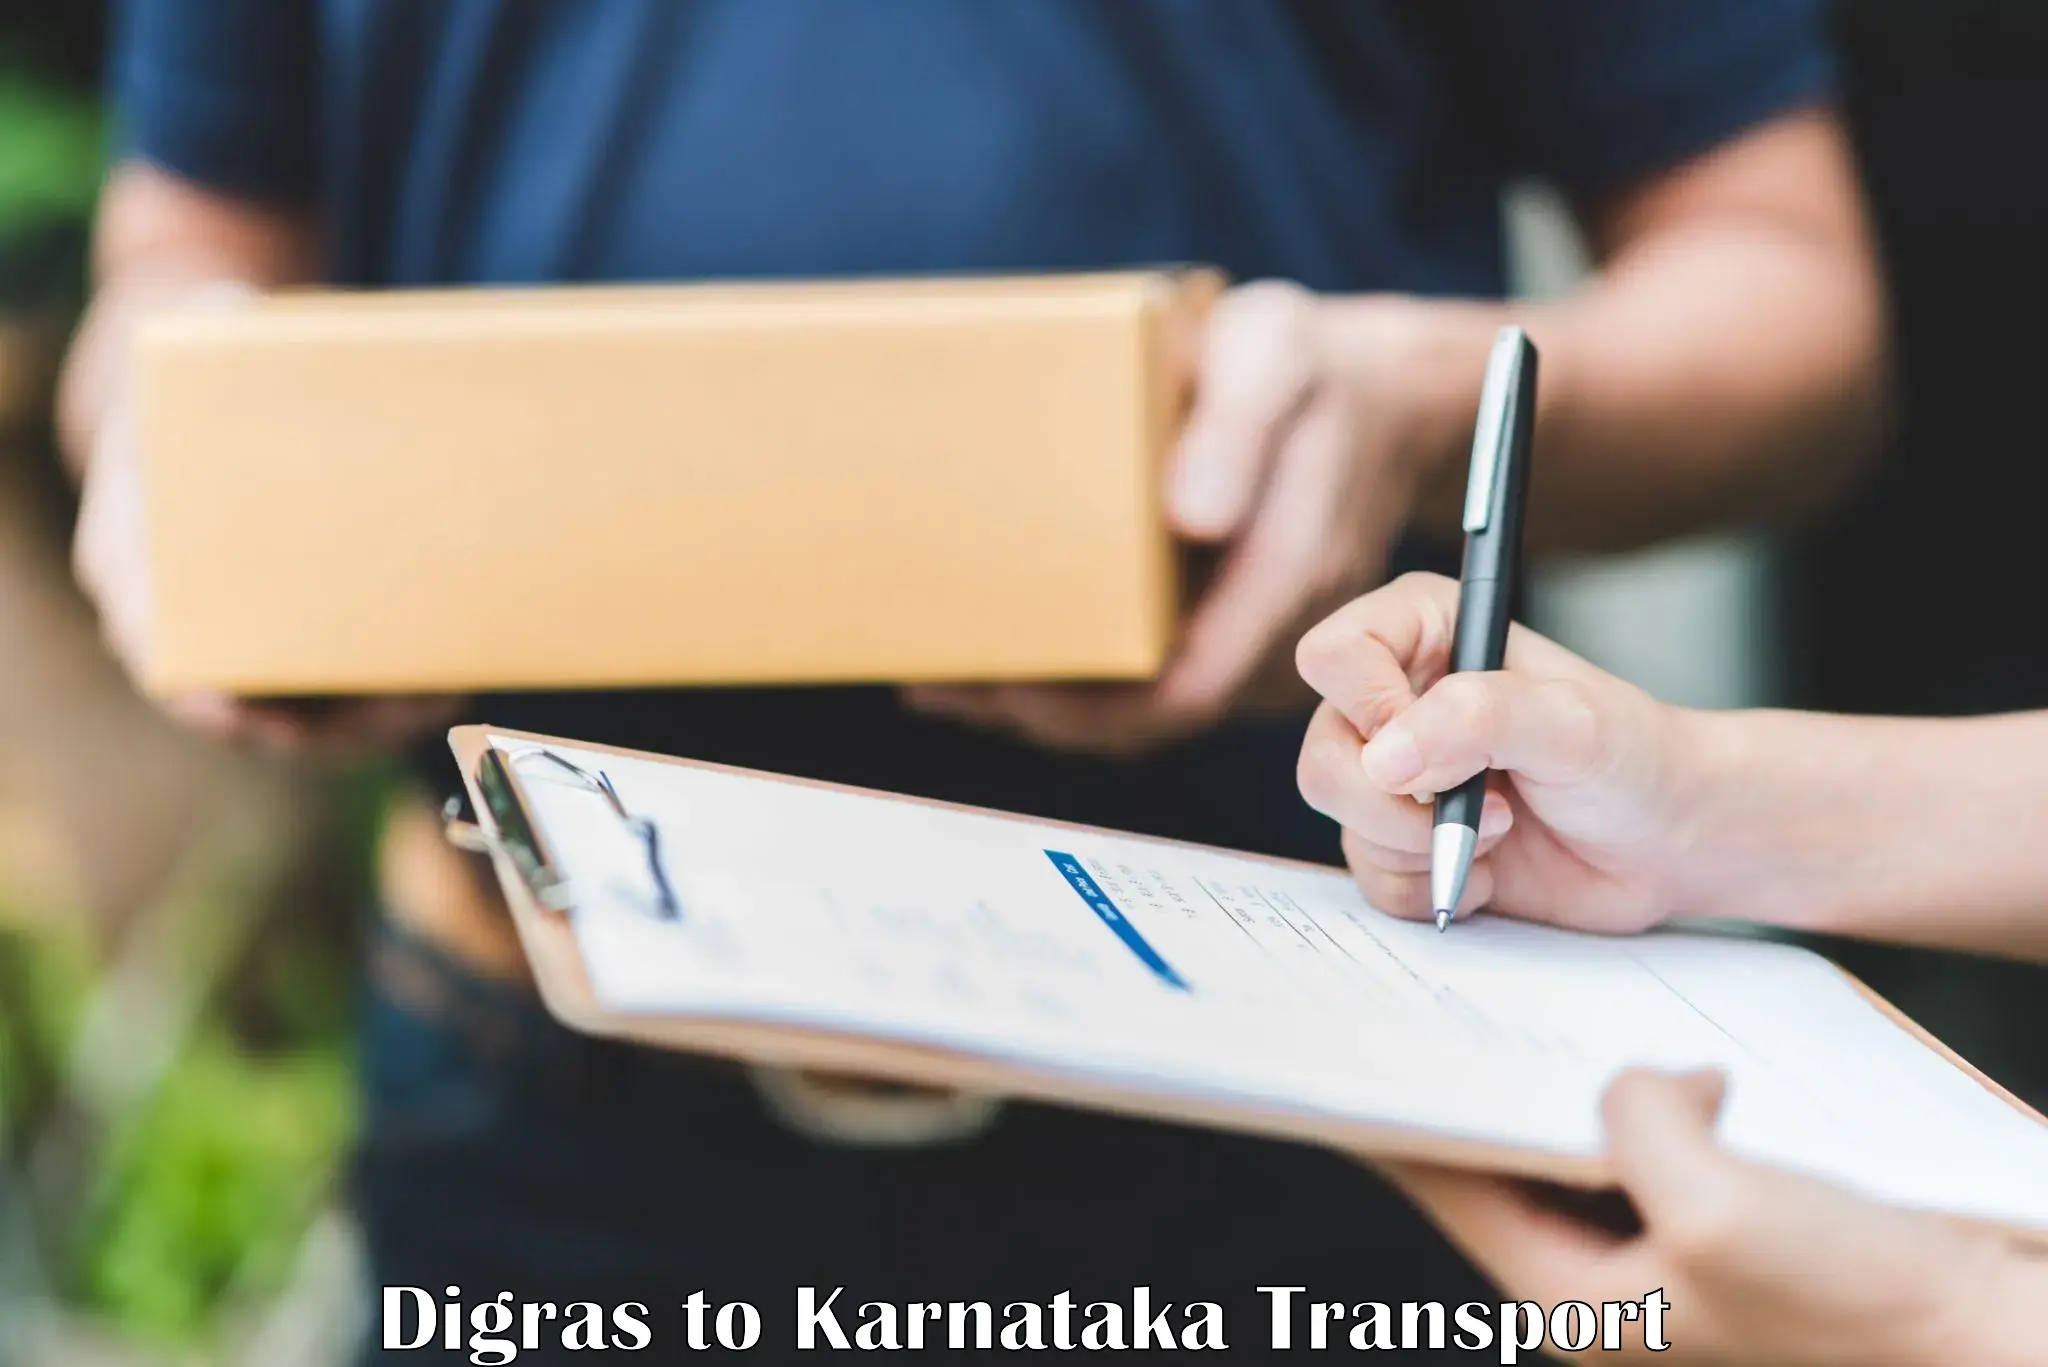 Online transport Digras to Bangarapet